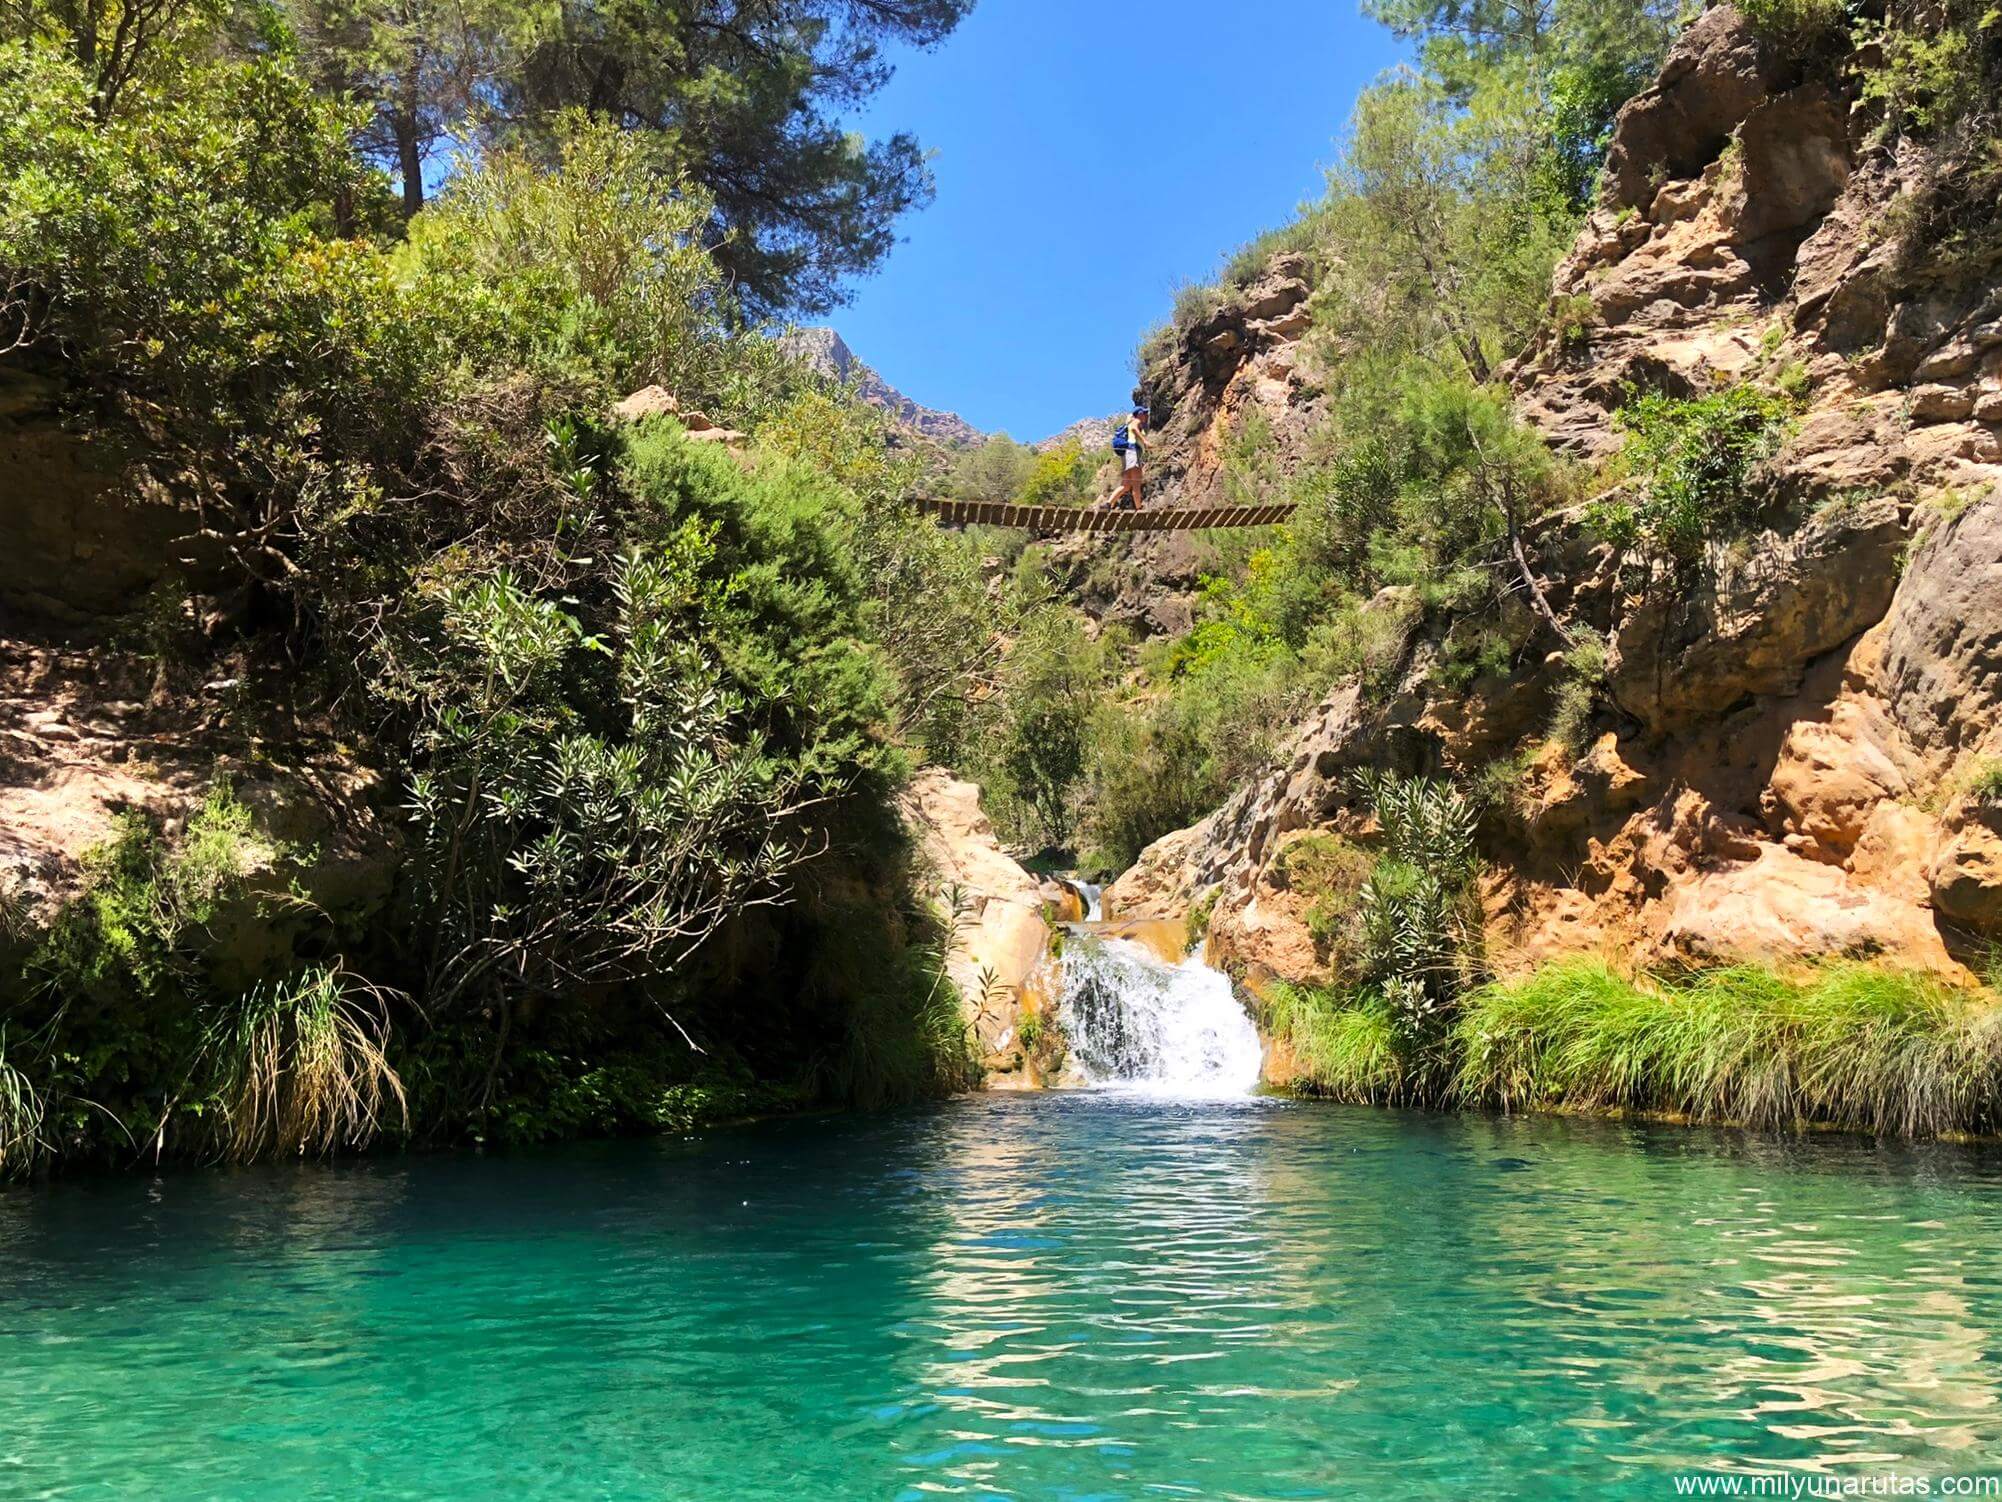 Descubre la belleza natural de Río Verde en Granada - Guía turística actualizada